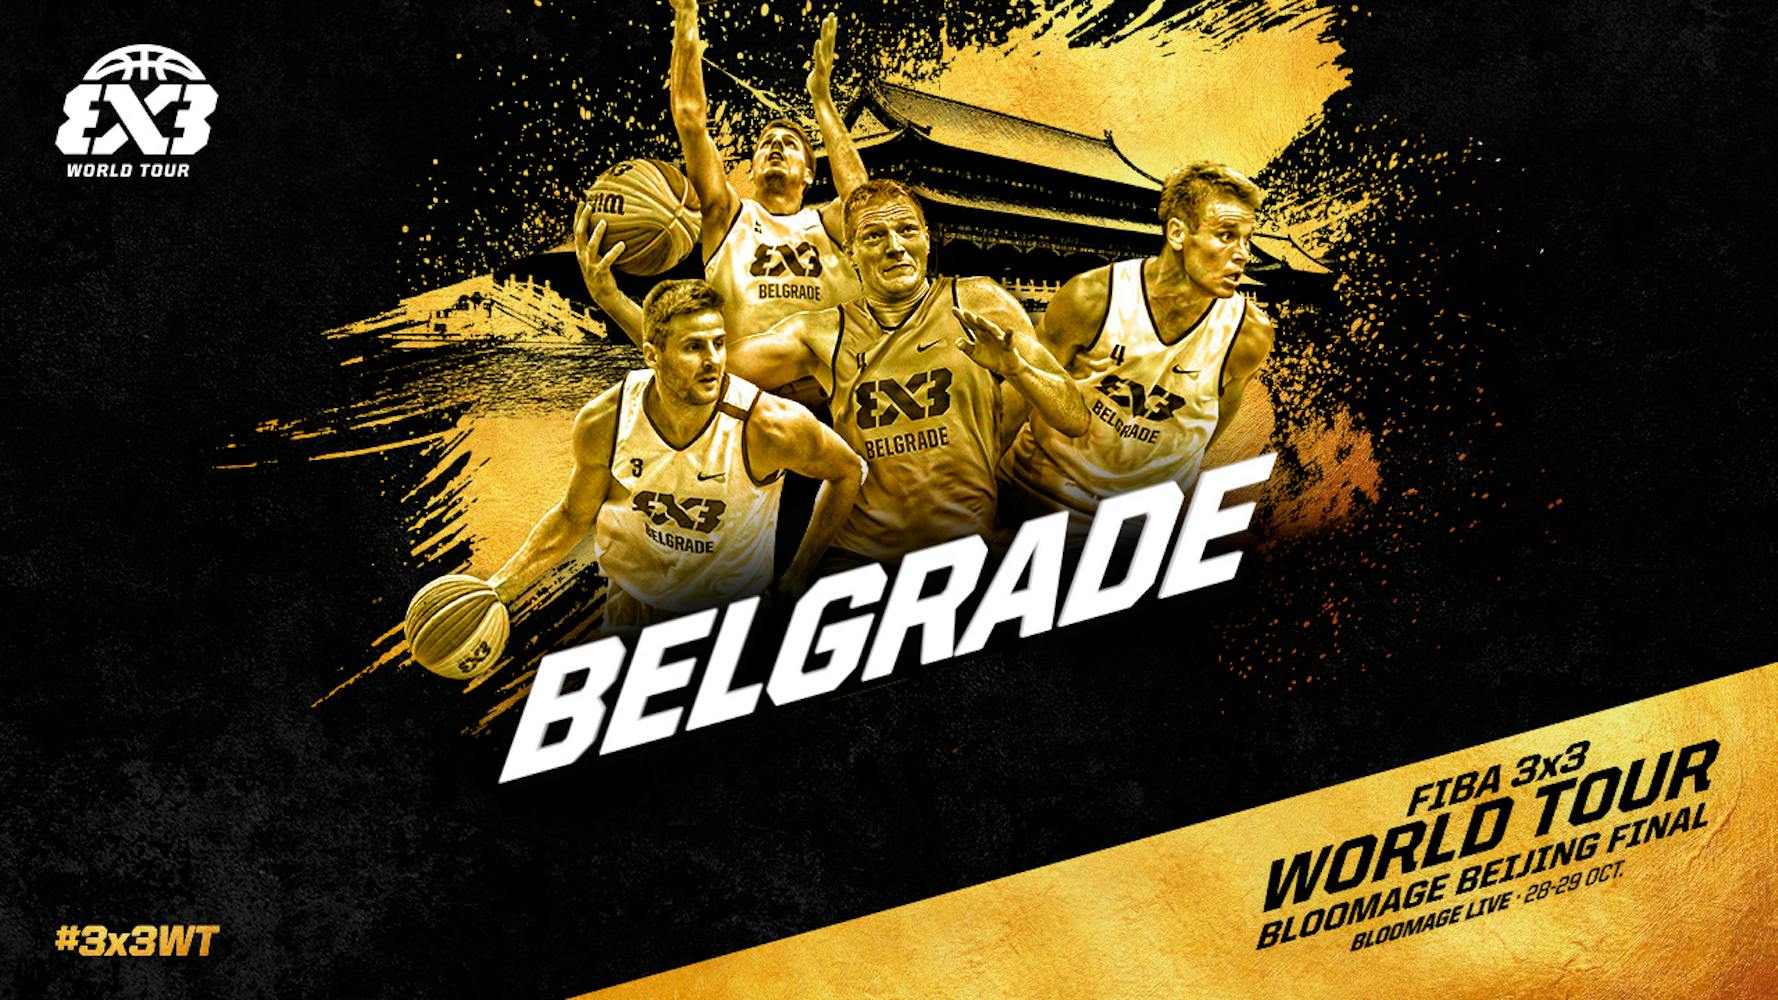 world tour 3x3 belgrade